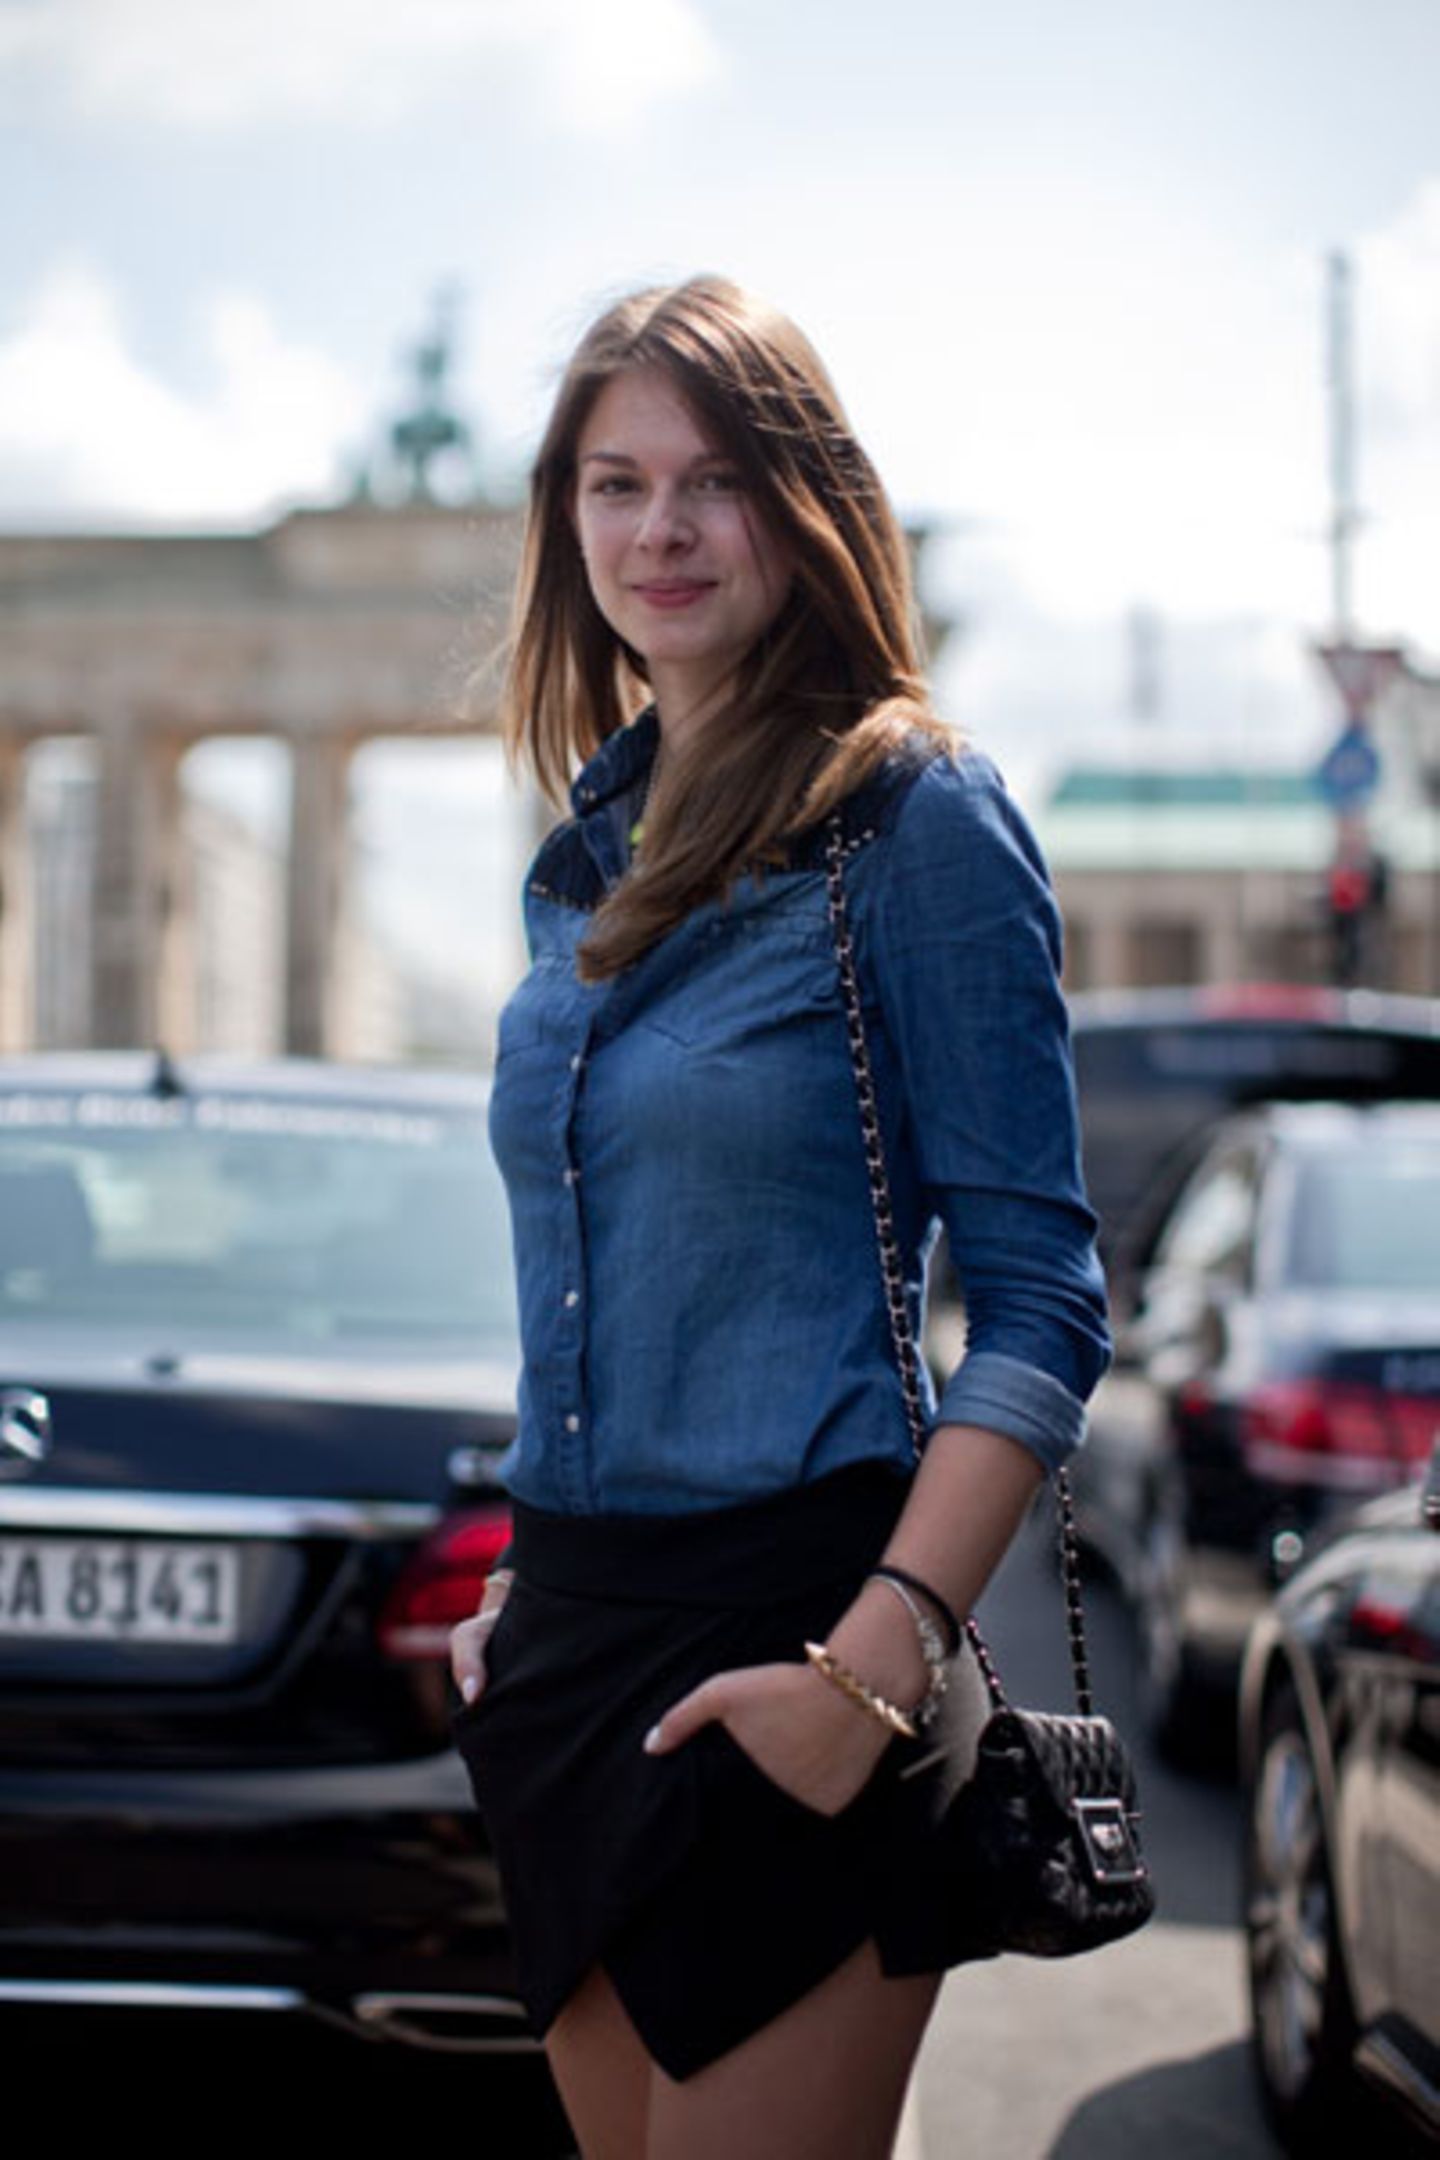 Warum kompliziert, wenn es auch einfach geht: Jeanshemd, interessant geschnittene schwarze Shorts und ein Umhängetäschen ergeben einen formidablen Fashion-Week-Look. Das Brandenburger Tor im Hintergrund macht sich dazu natürlich auch gut.